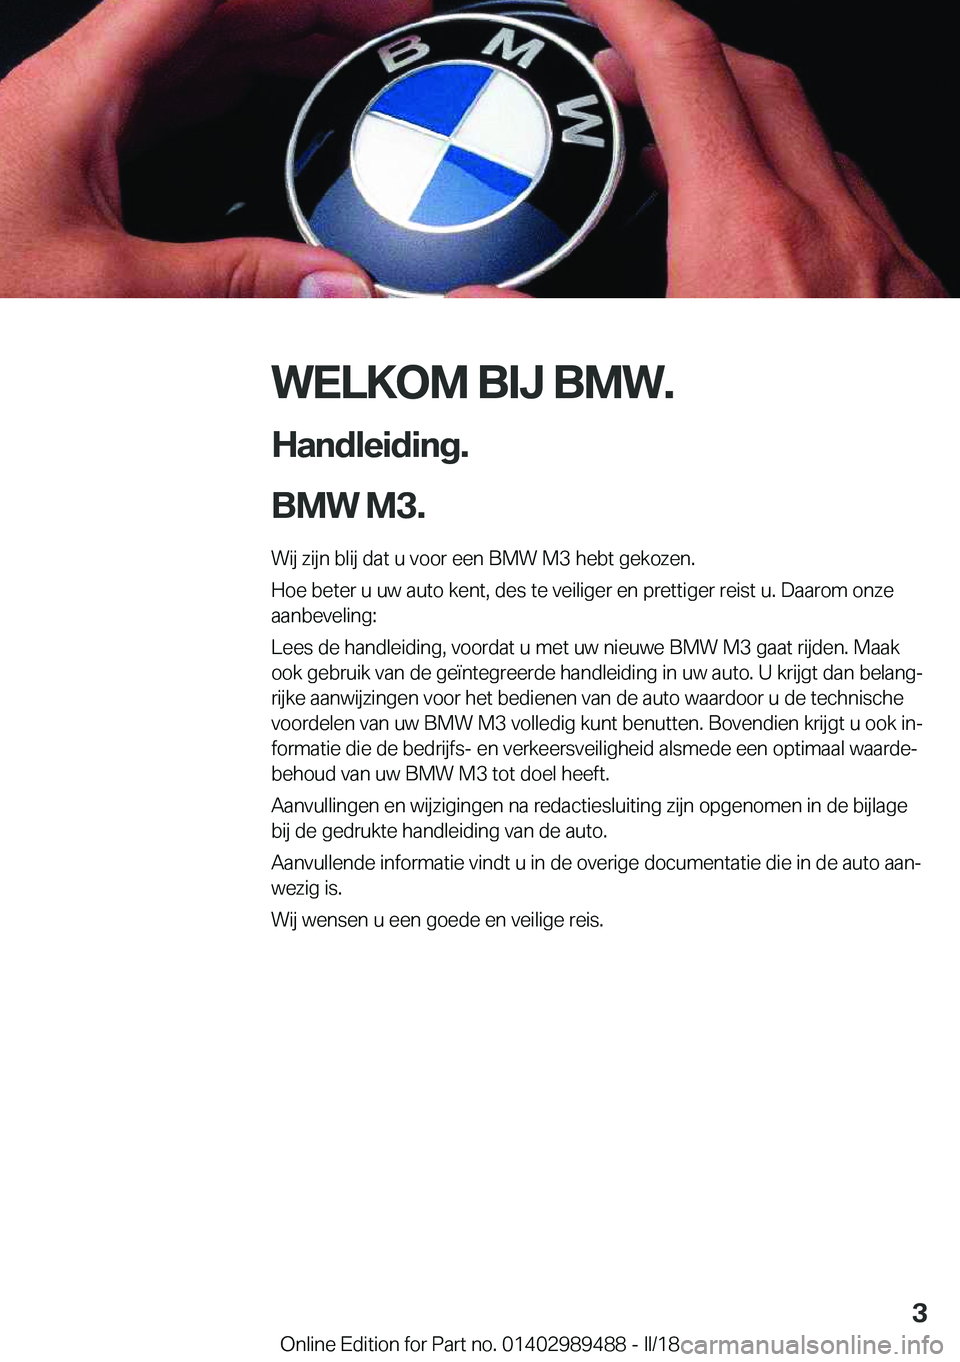 BMW M3 2018  Instructieboekjes (in Dutch) �W�E�L�K�O�M��B�I�J��B�M�W�.
�H�a�n�d�l�e�i�d�i�n�g�.
�B�M�W��M�3�. �W�i�j� �z�i�j�n� �b�l�i�j� �d�a�t� �u� �v�o�o�r� �e�e�n� �B�M�W� �M�3� �h�e�b�t� �g�e�k�o�z�e�n�.
�H�o�e� �b�e�t�e�r� �u� �u�w� 